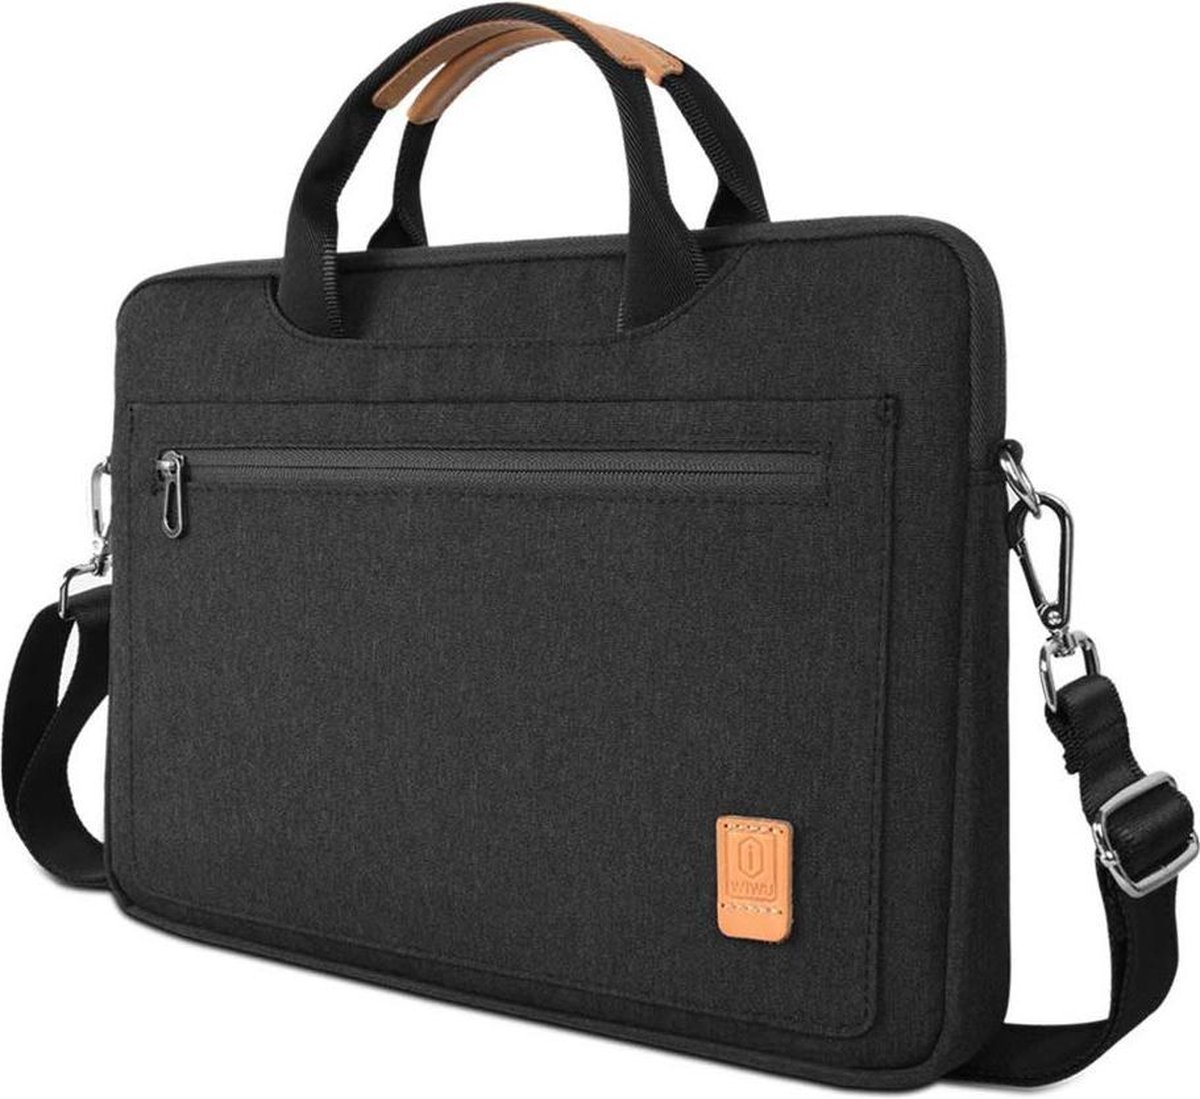 Laptoptas geschikt voor fujitsu Lifebook - 14 inch Pioneer Waterafstotende laptoptas met schouderband - Zwart